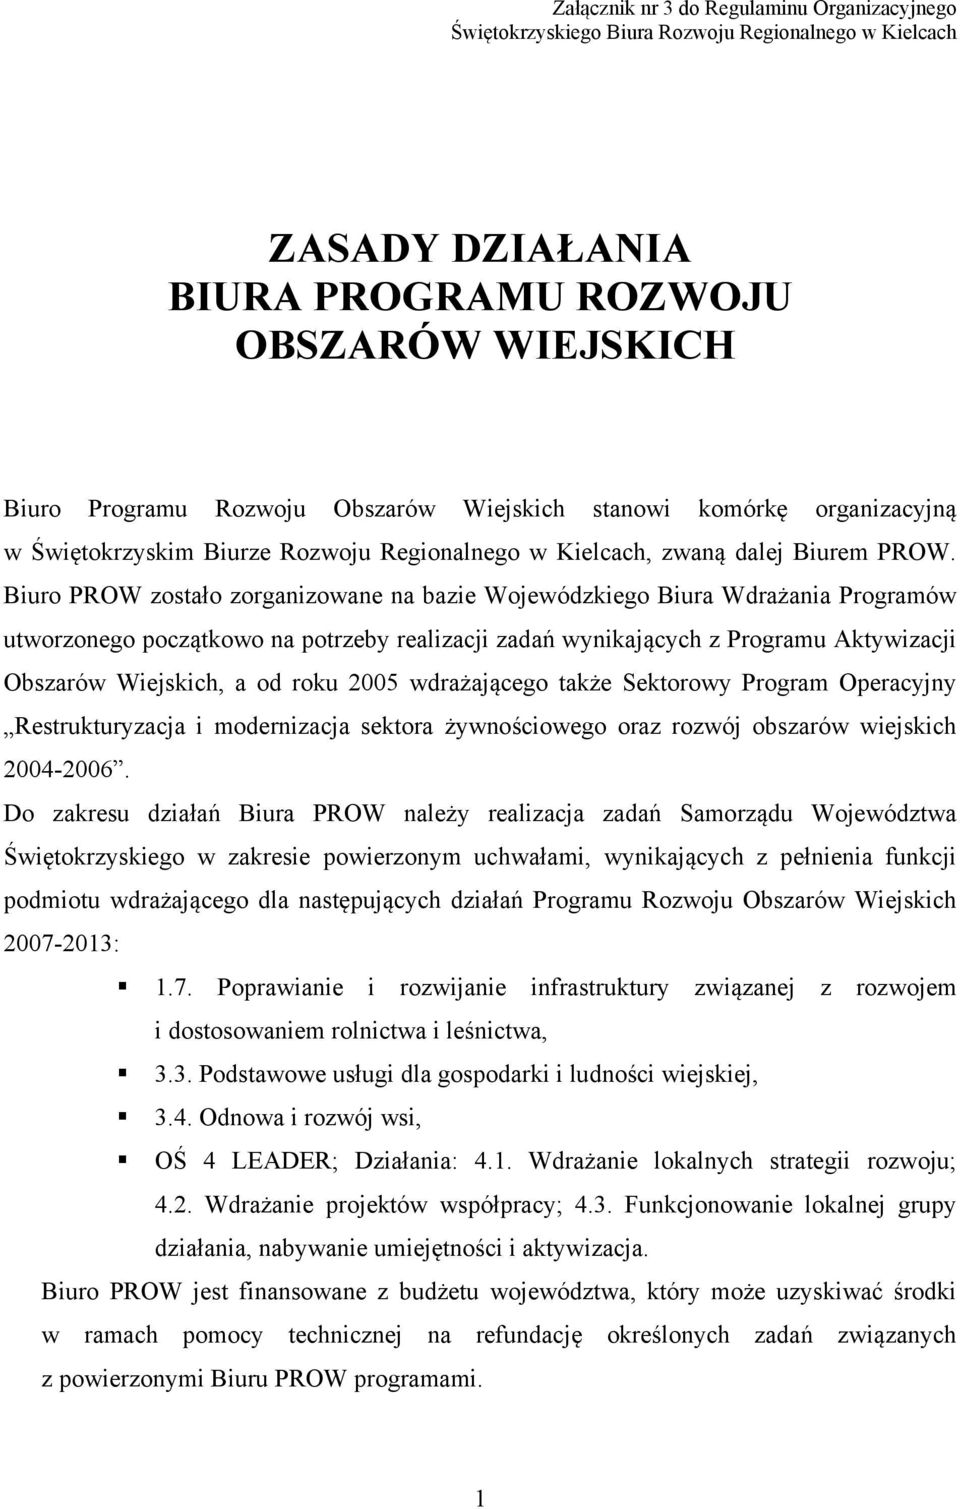 Biuro PROW zostało zorganizowane na bazie Wojewódzkiego Biura Wdrażania Programów utworzonego początkowo na potrzeby realizacji zadań wynikających z Programu Aktywizacji Obszarów Wiejskich, a od roku